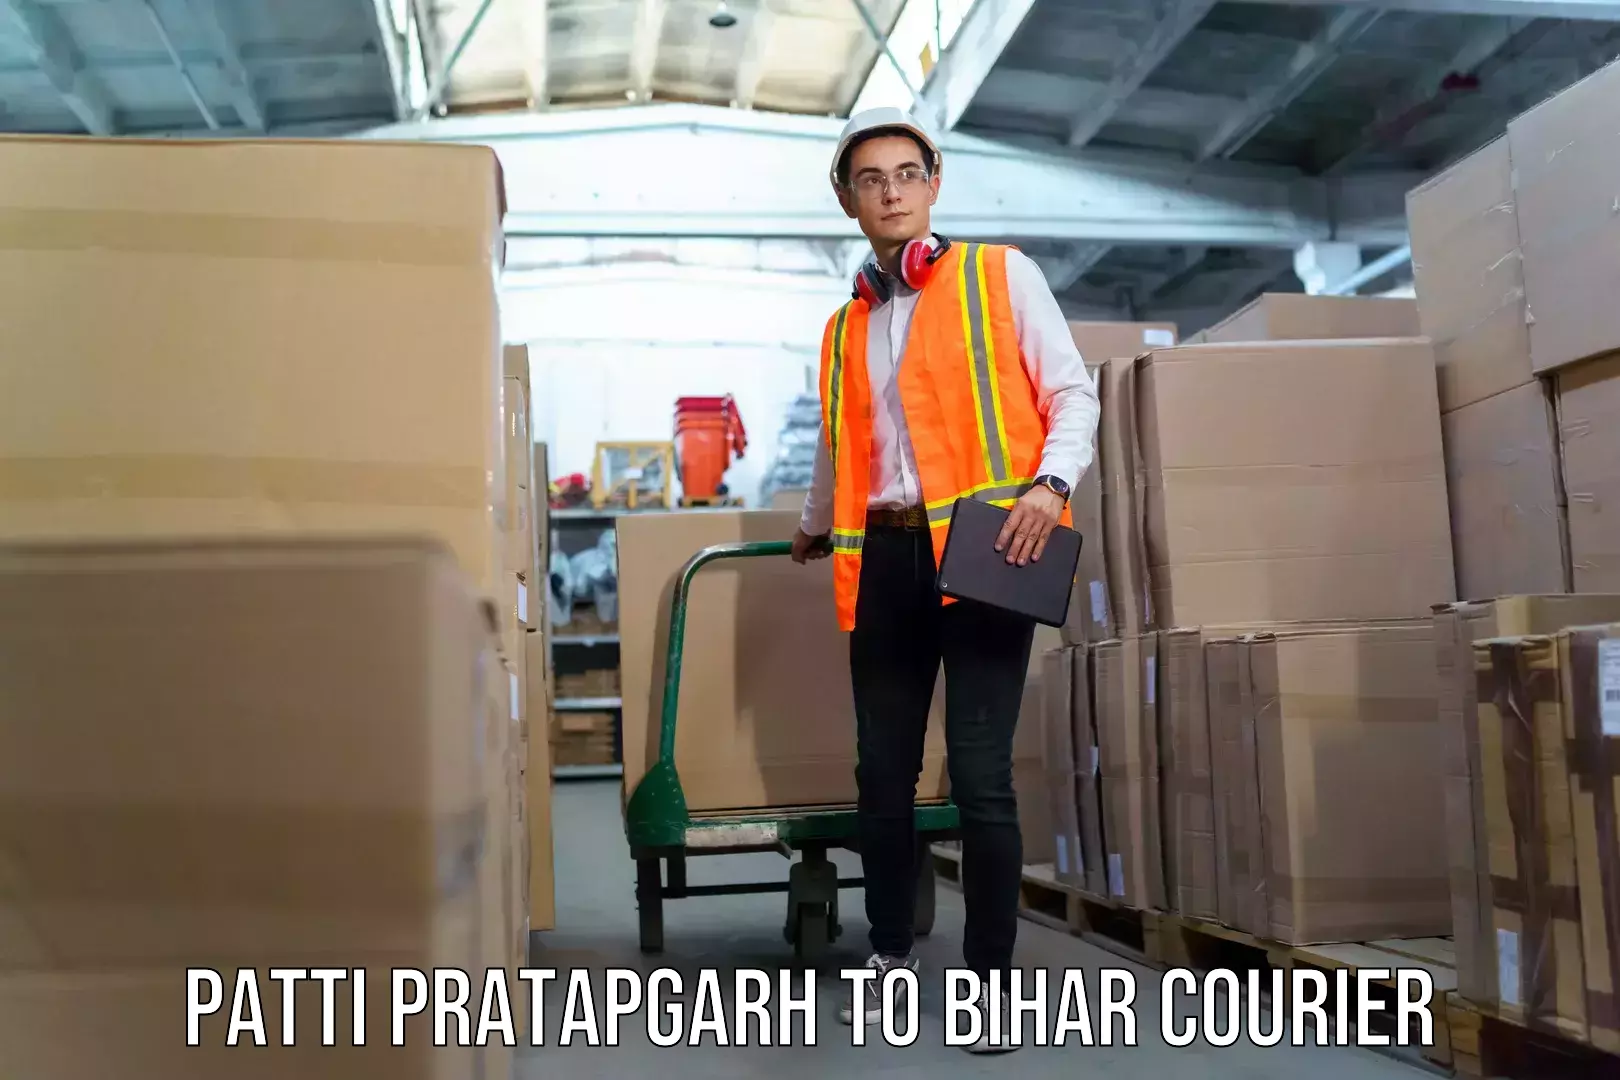 Citywide baggage courier Patti Pratapgarh to Bhagalpur